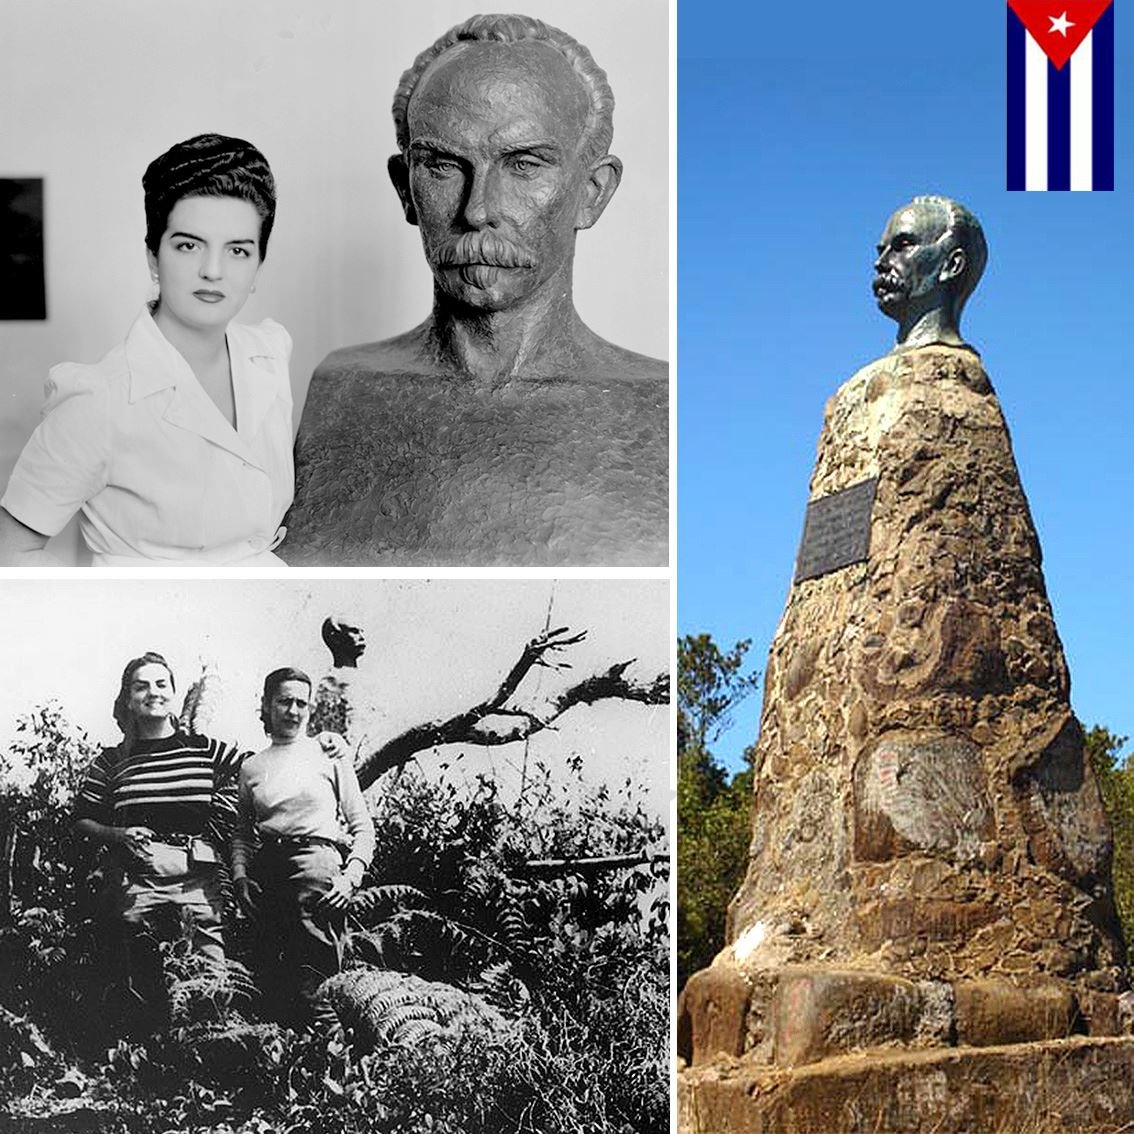 21/5/1953 Es colocado en lo alto del Turquino un busto de José Martí.“Escasos, como los montes, son los hombres que saben mirar desde ellos, y sienten con entrañas de nación, o de humanidad.” #MartíVive. #MujeresEnRevolución . @Mujeres_Revoluc . @DeZurdaTeam_ .